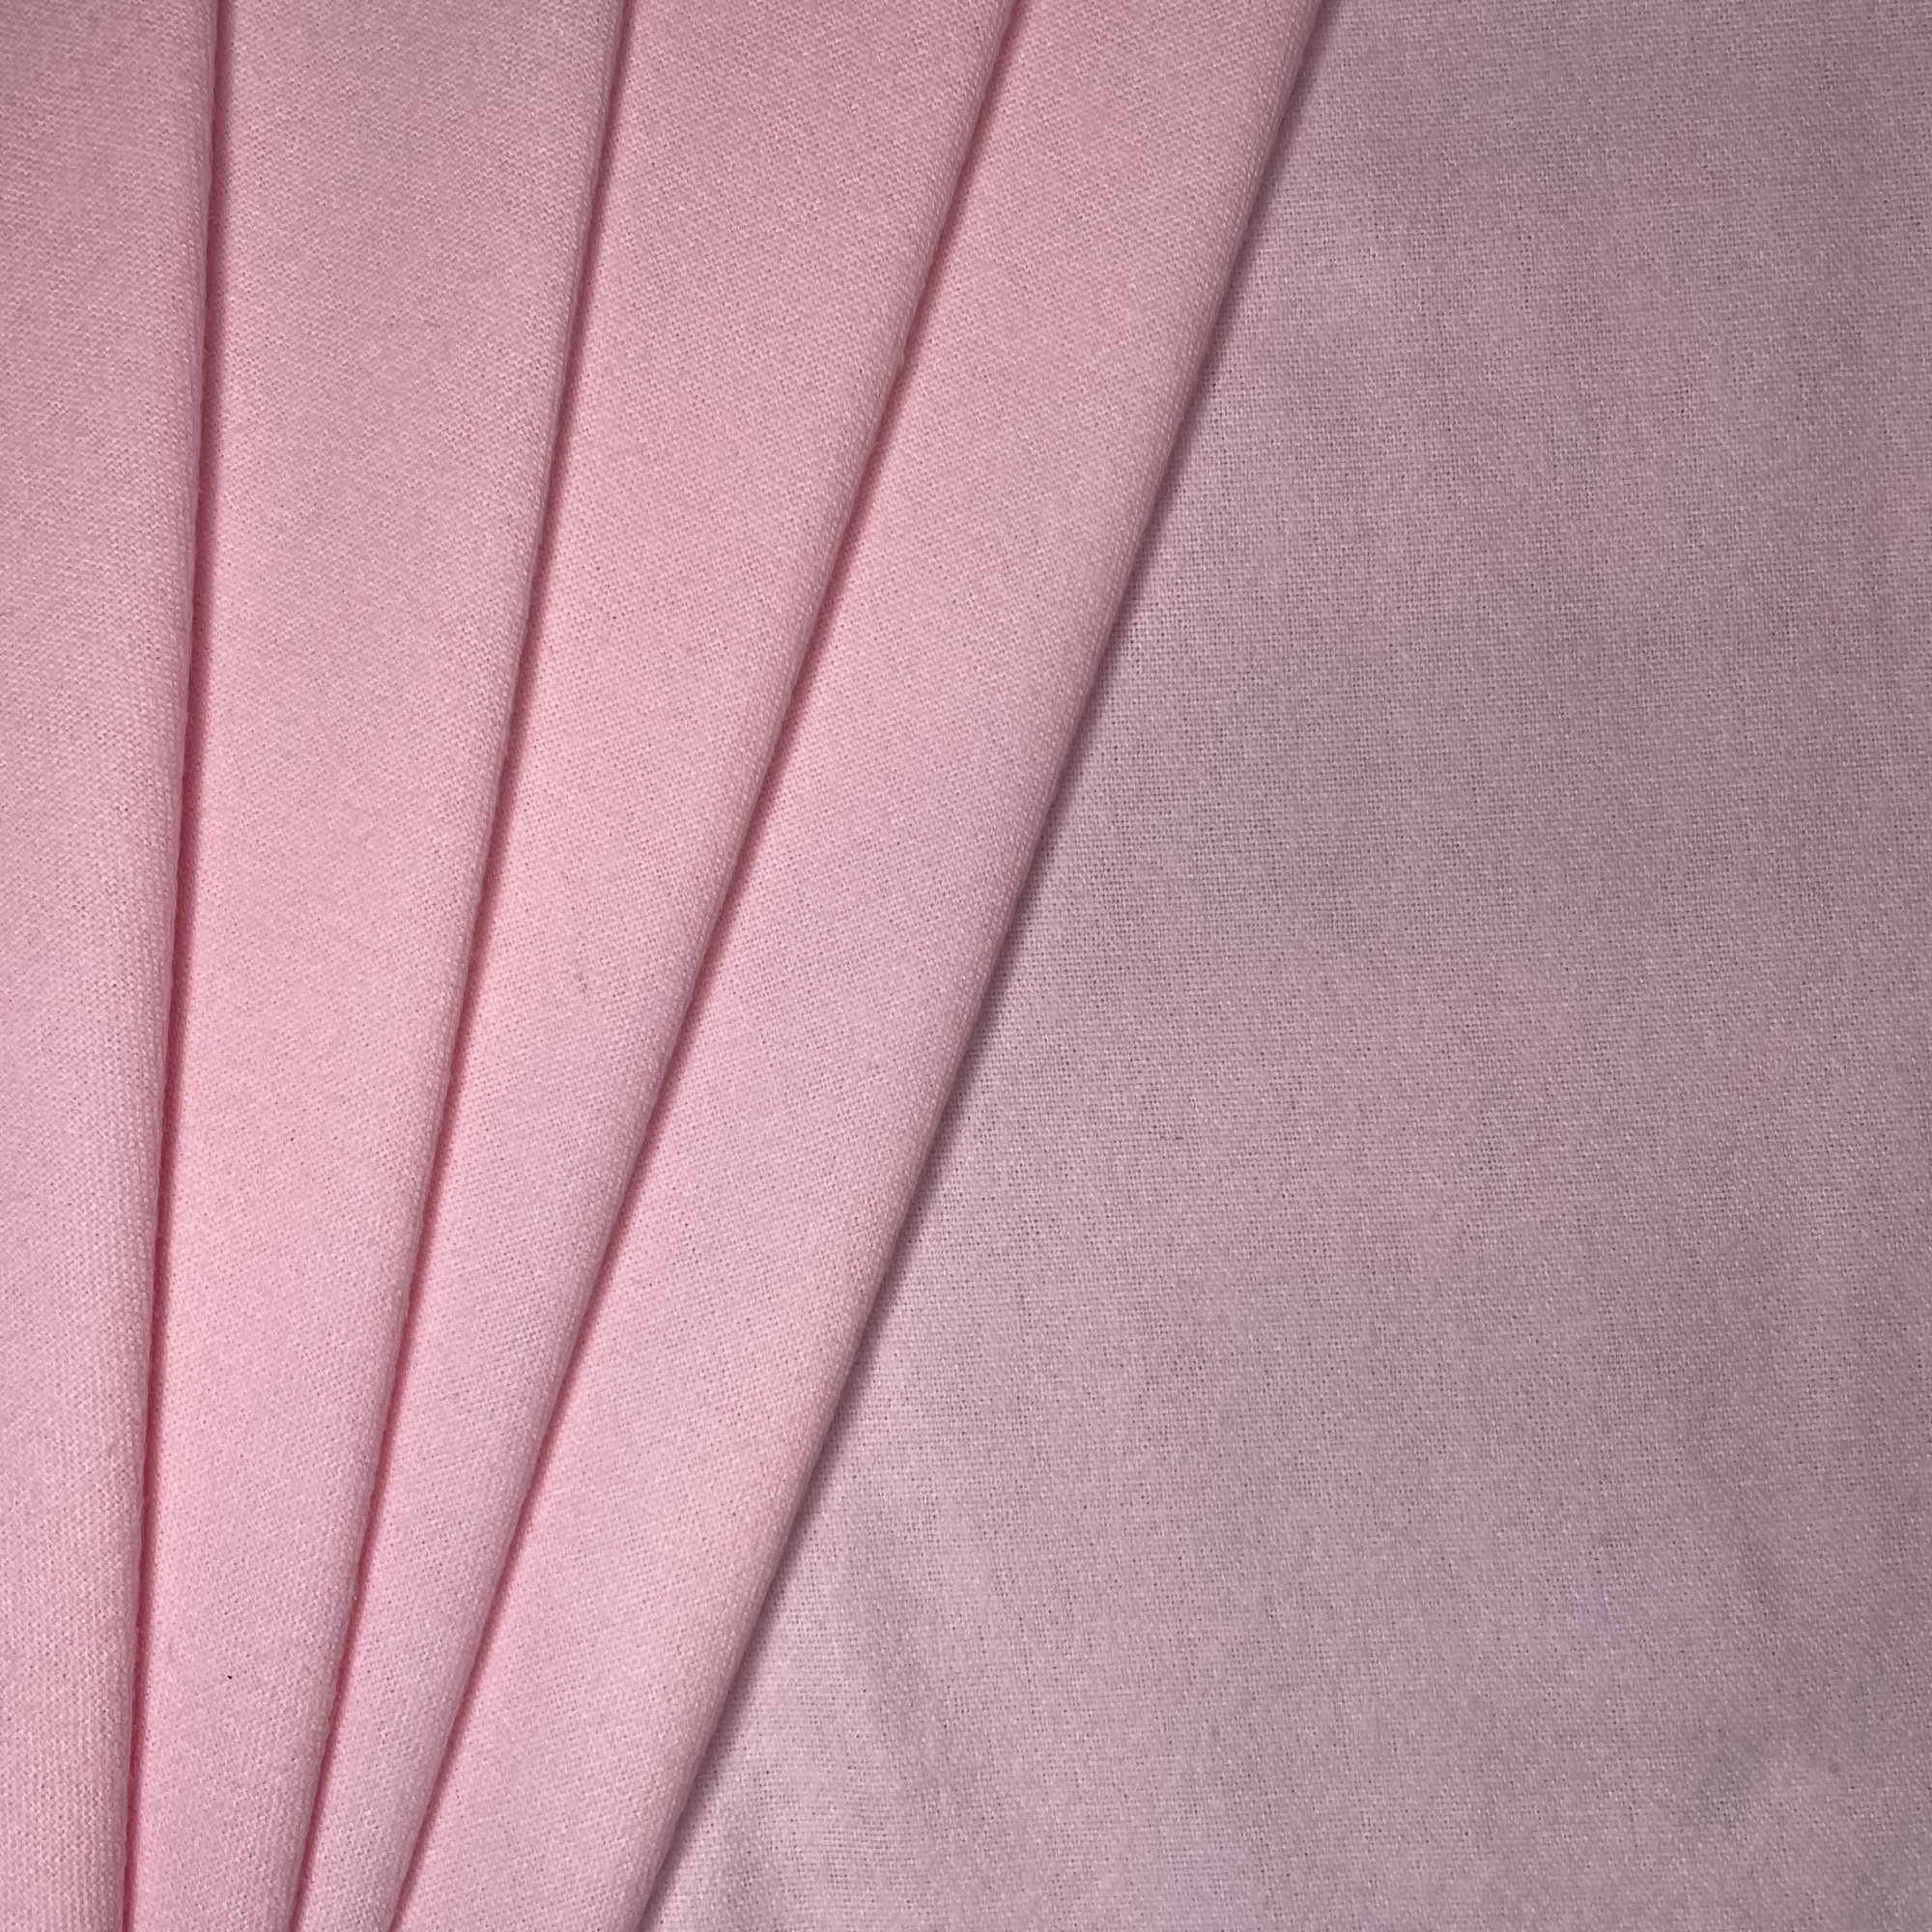 Фланель ш 90 см г/к розовая - купить в магазине "А-Текстиль"